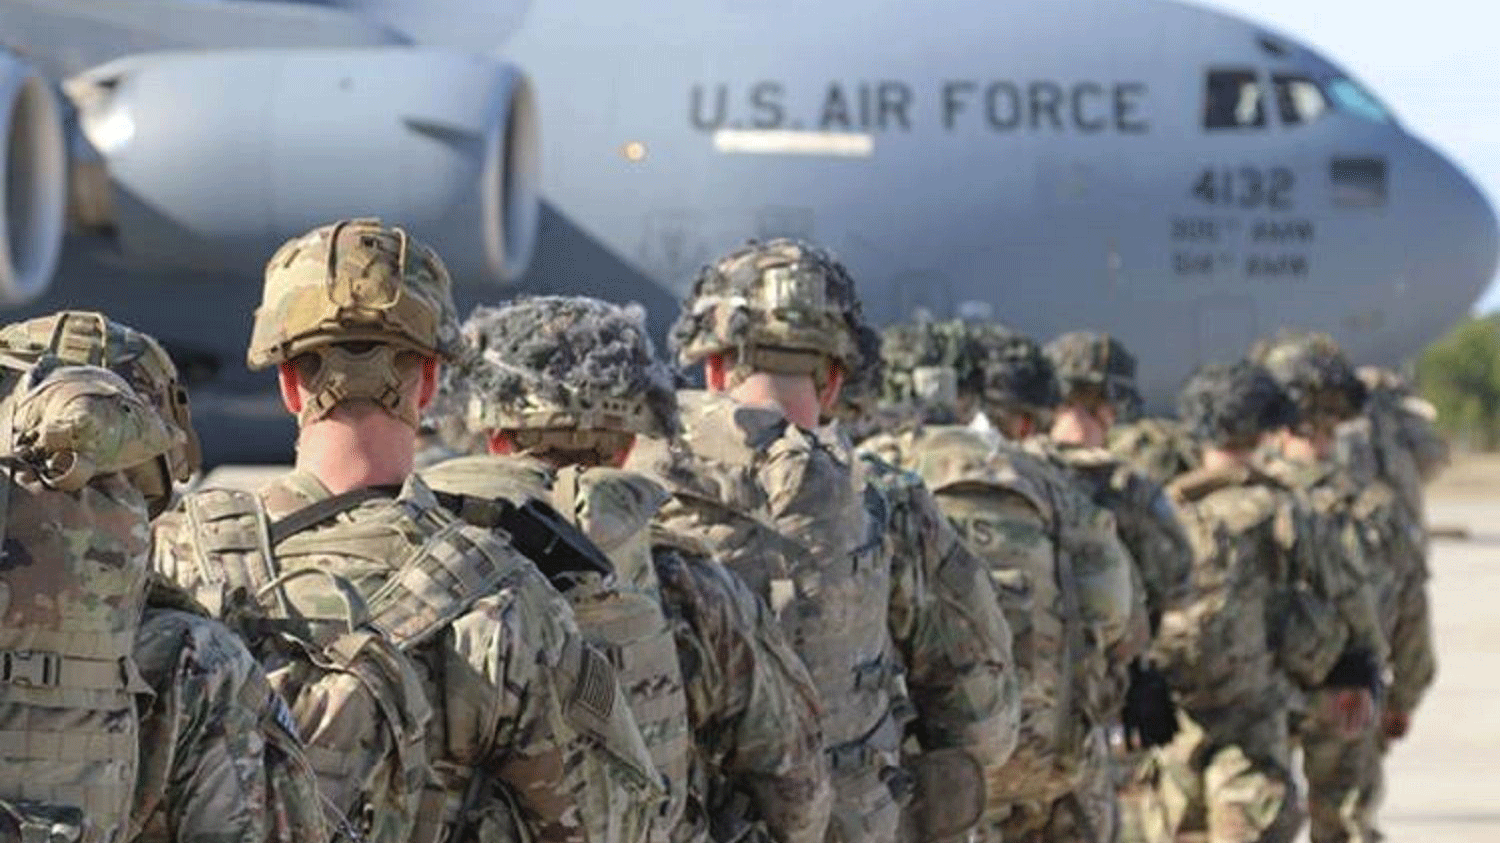 جنود أميركيون في قاعدة عسكرية في كارولاينا الشمالية مطلع العام في طريقهم إلى قواعد انتشار الجيش الأميركي خارج البلاد